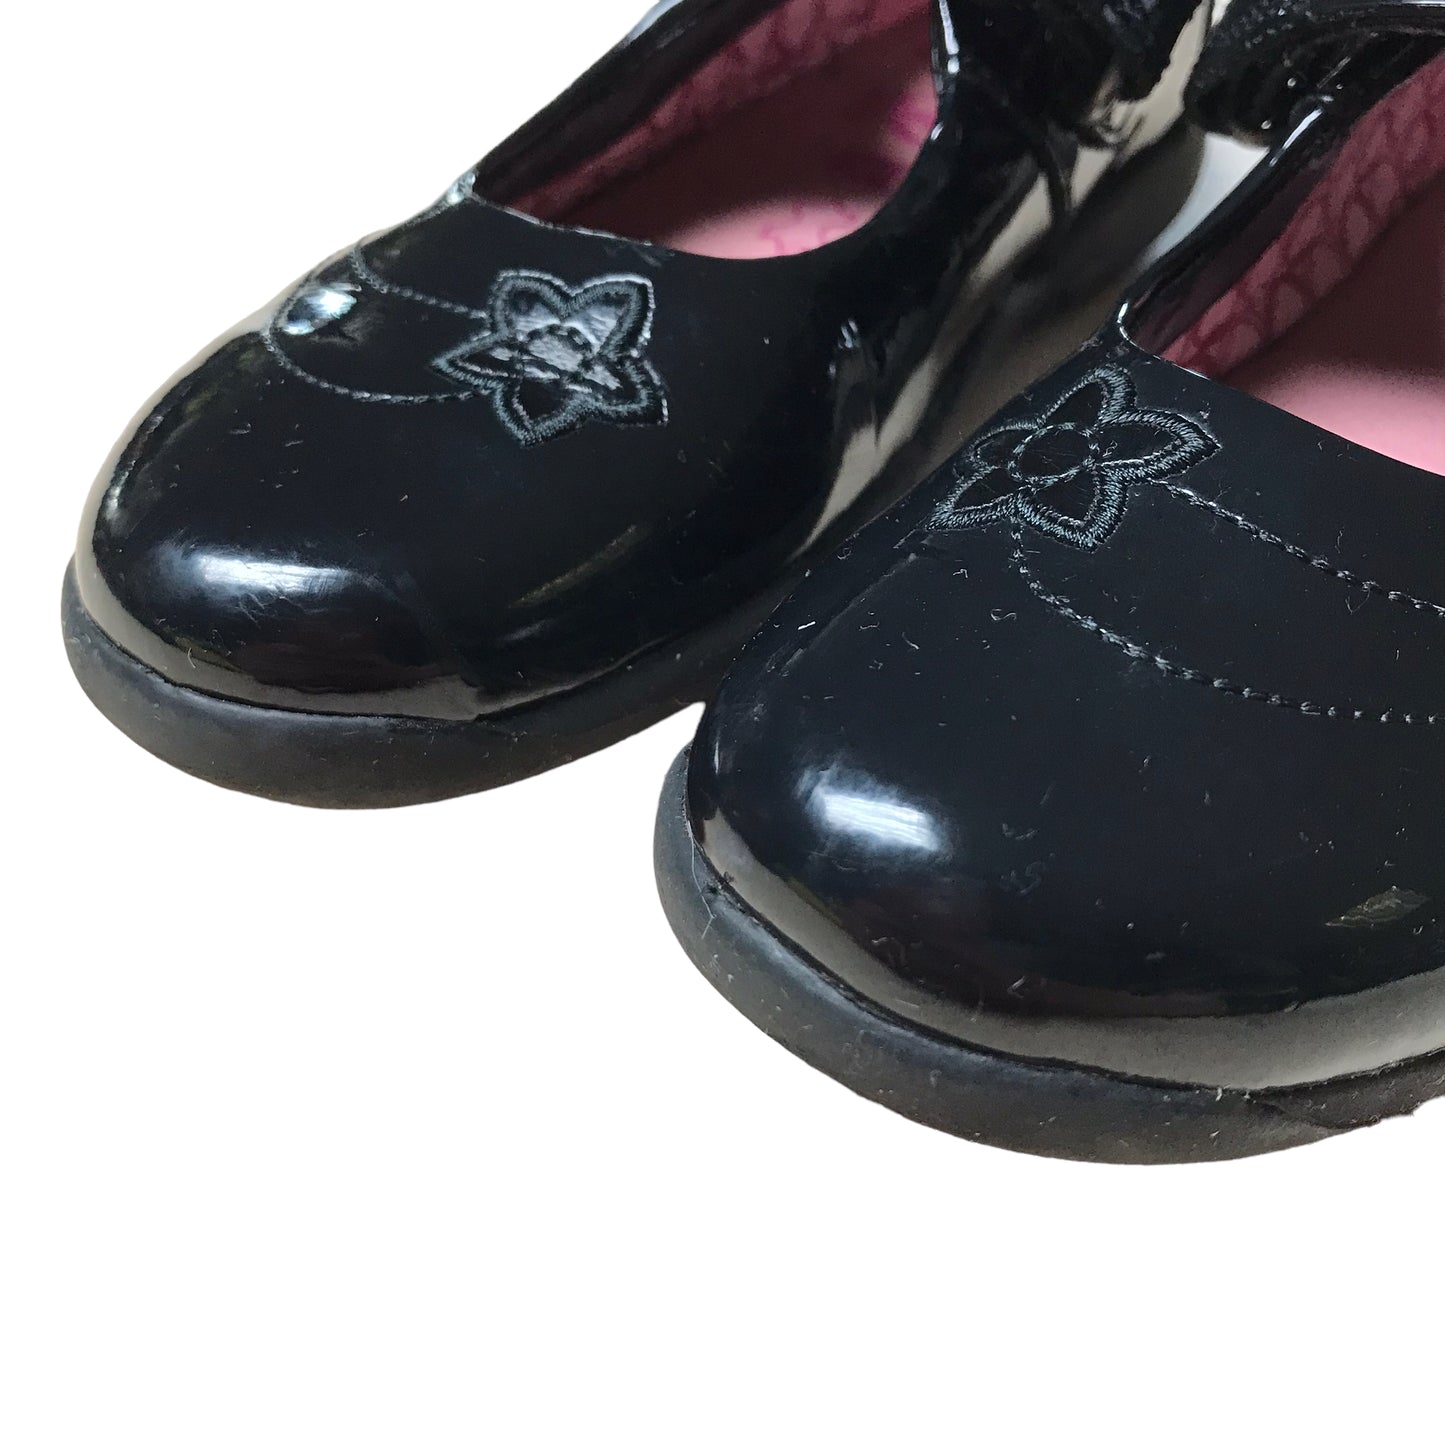 Clarks Black Leather School Shoes Shoe Size 9E junior